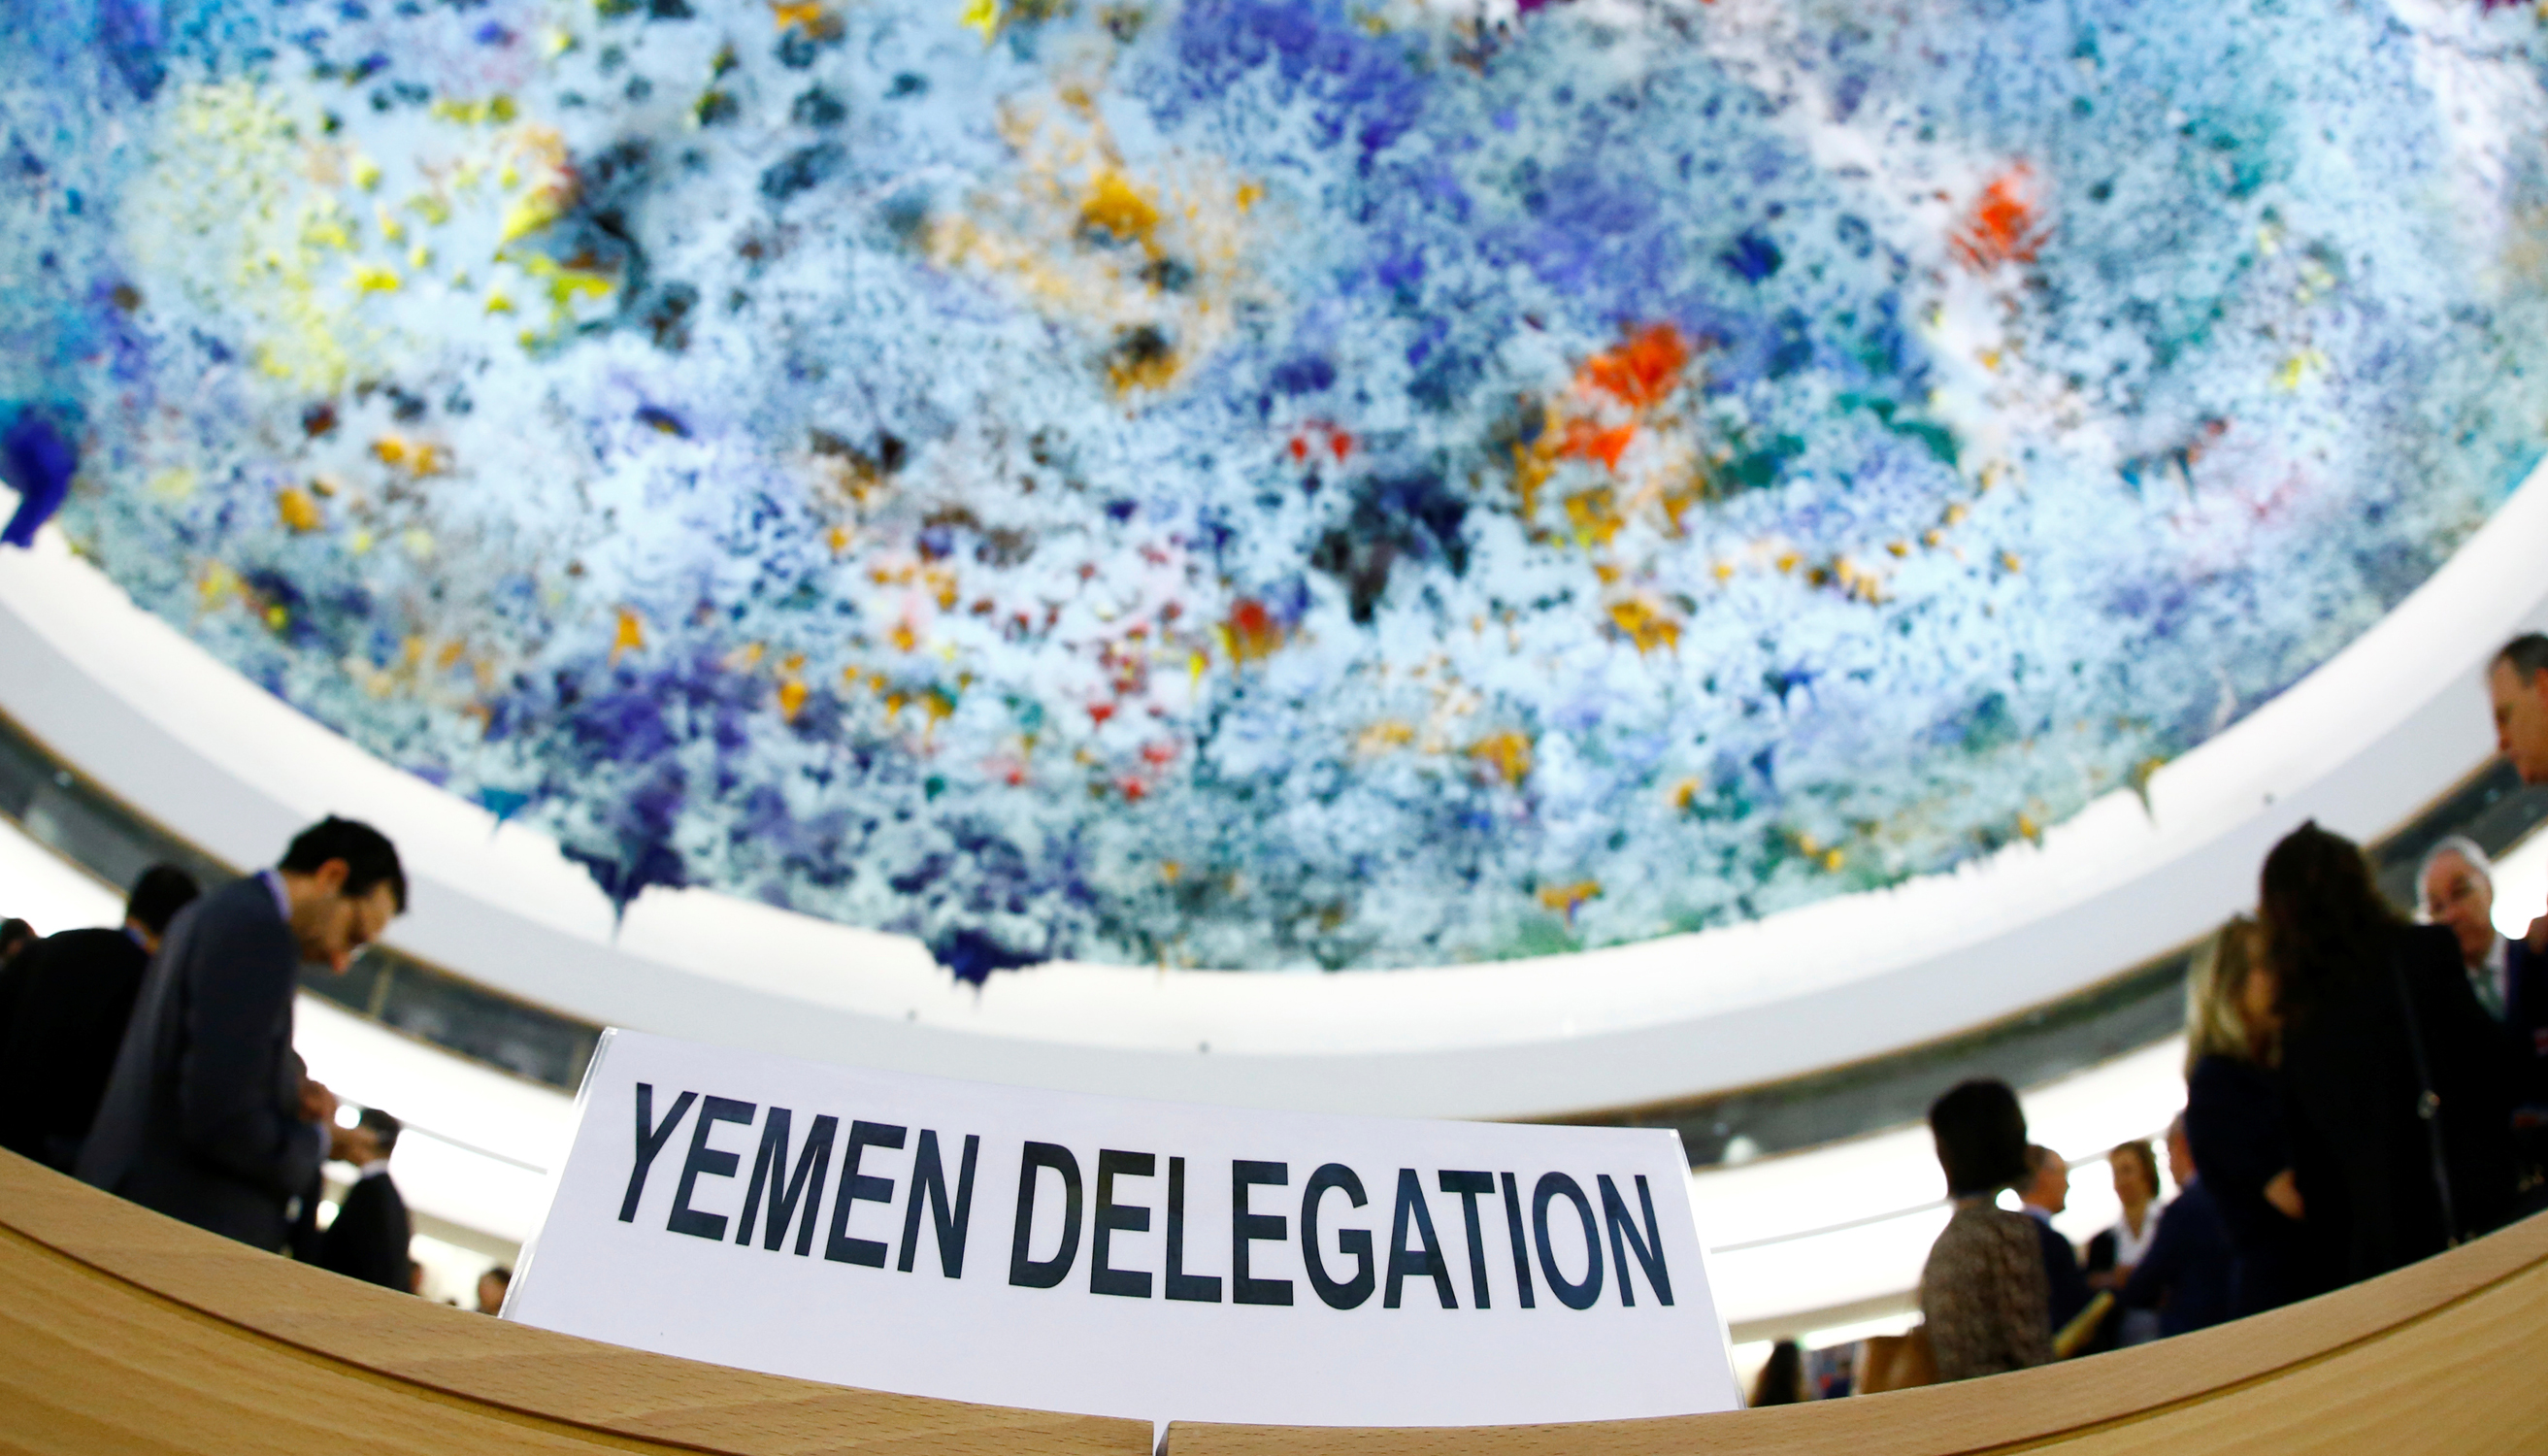 Jemen-Delegation in der UN.